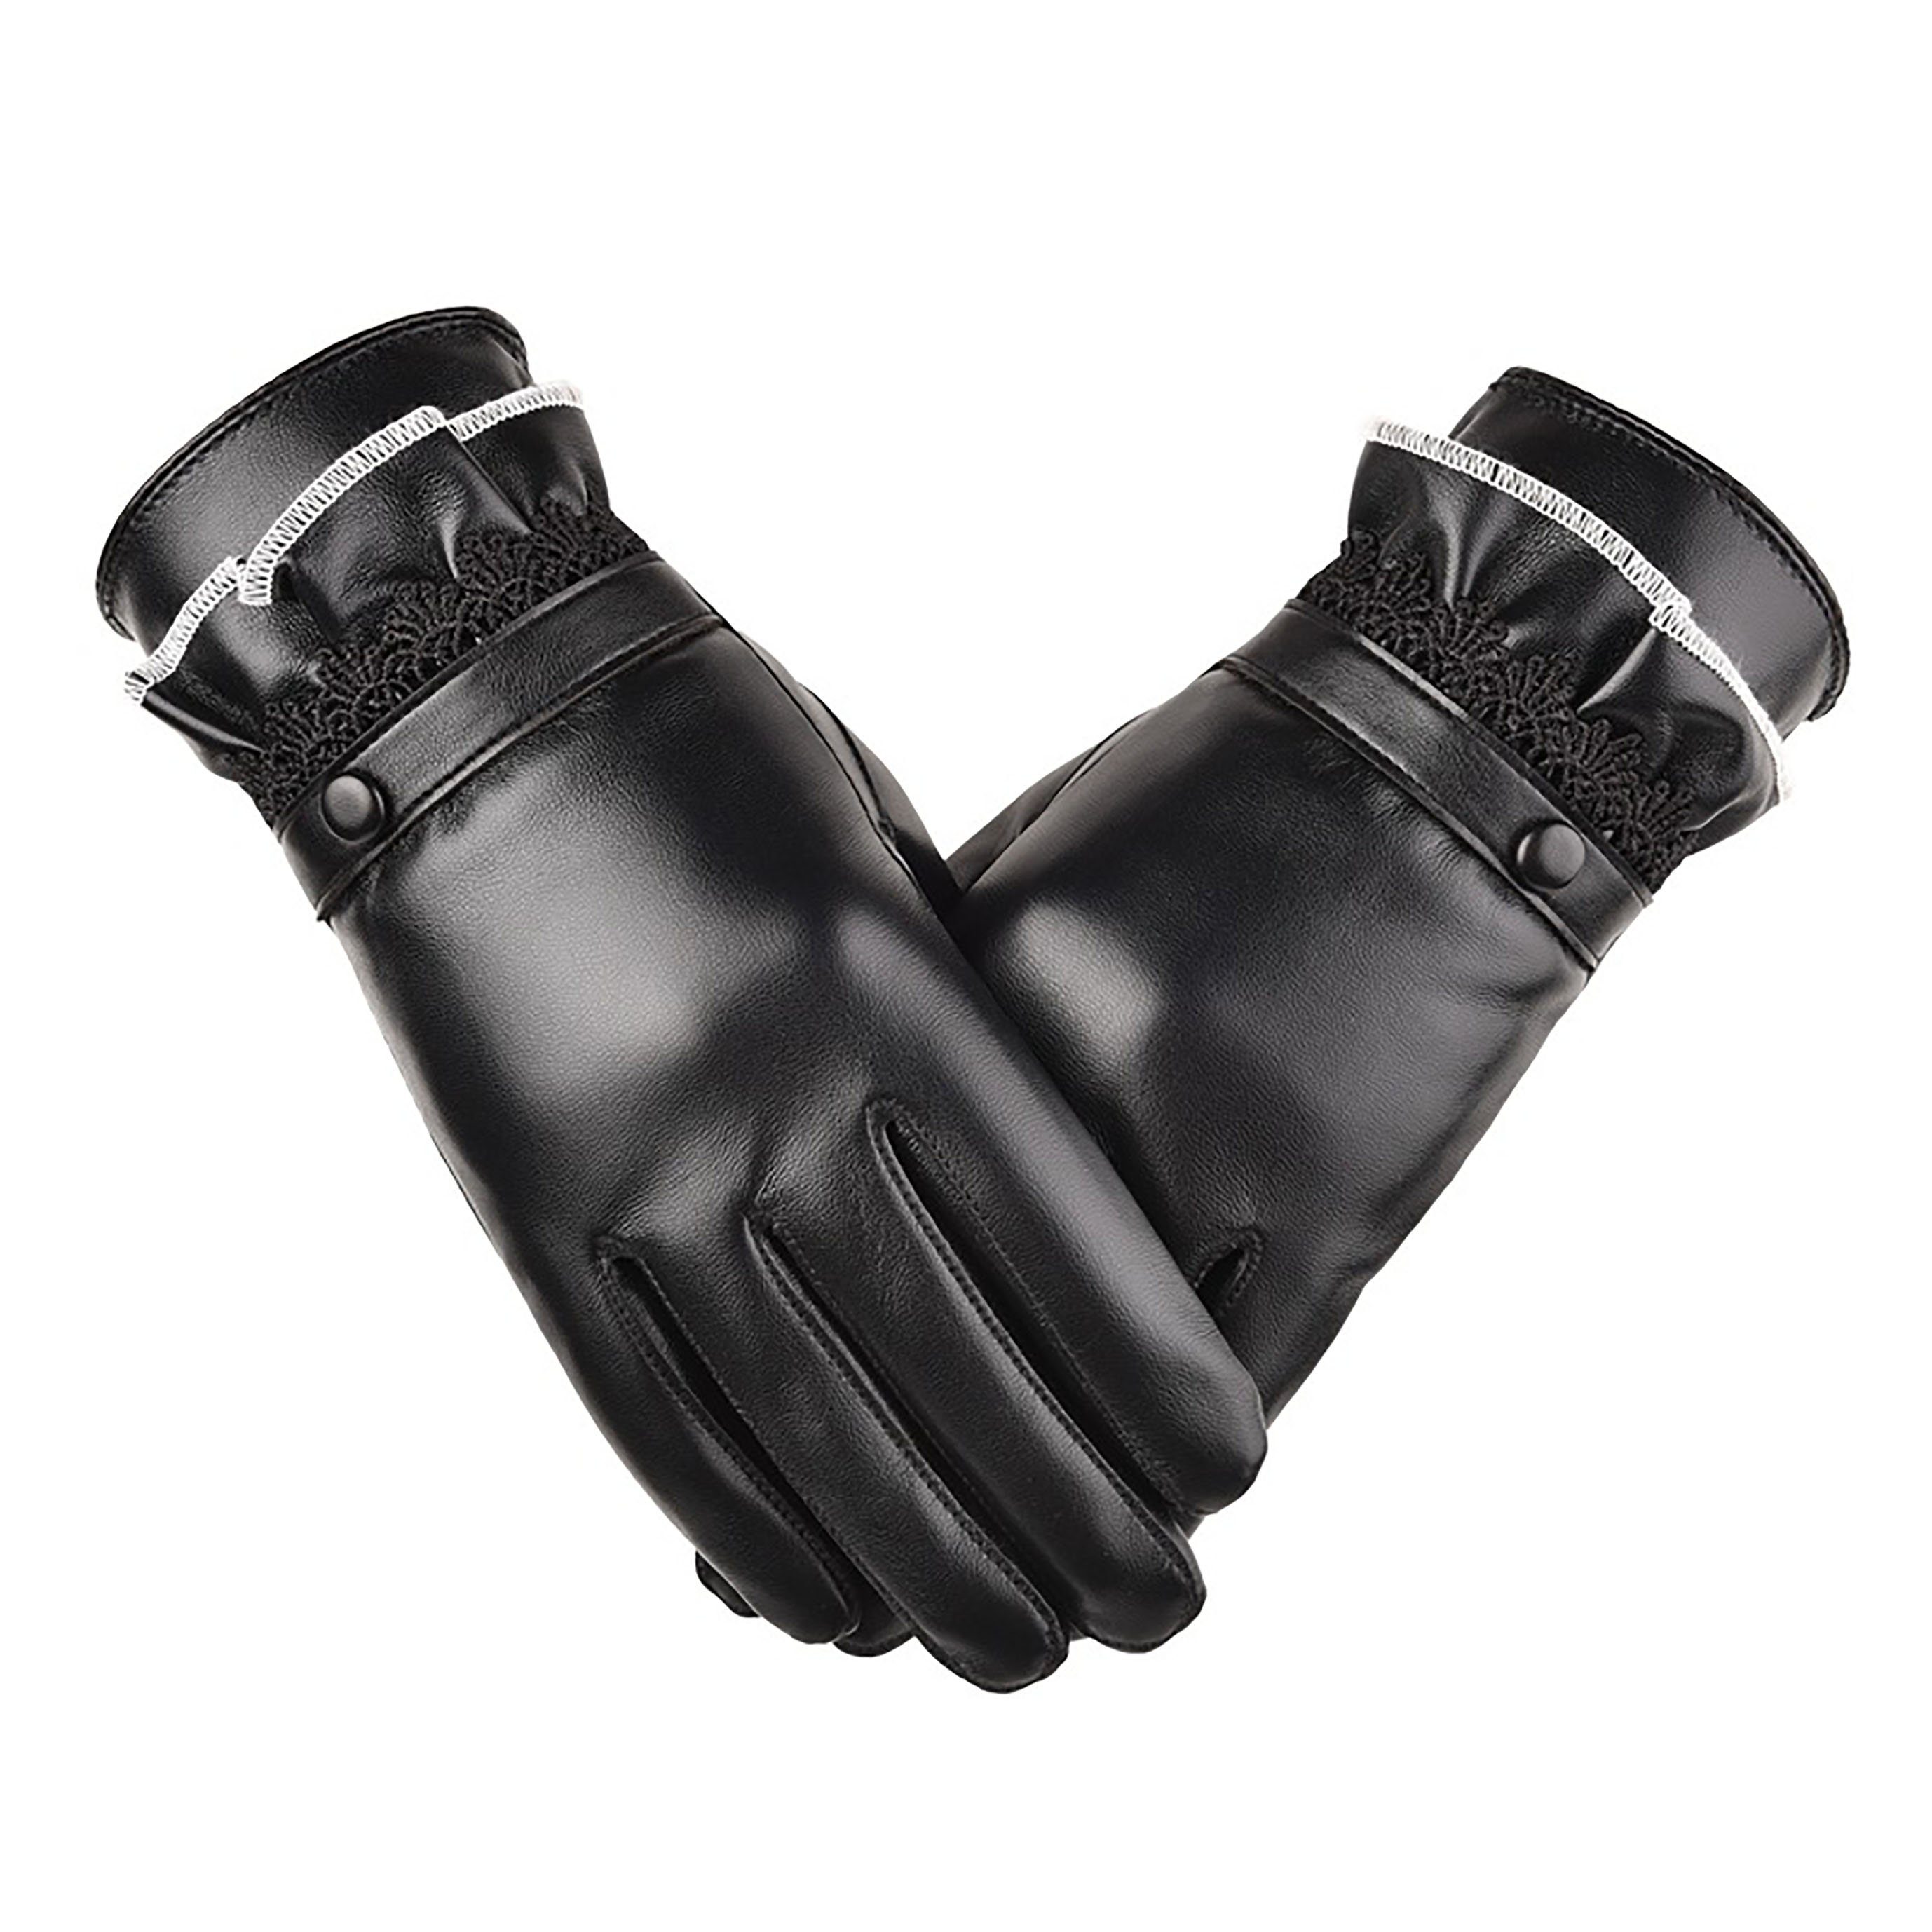 SRRINM Trikot-Handschuhe Warme Lederhandschuhe gepolsterte